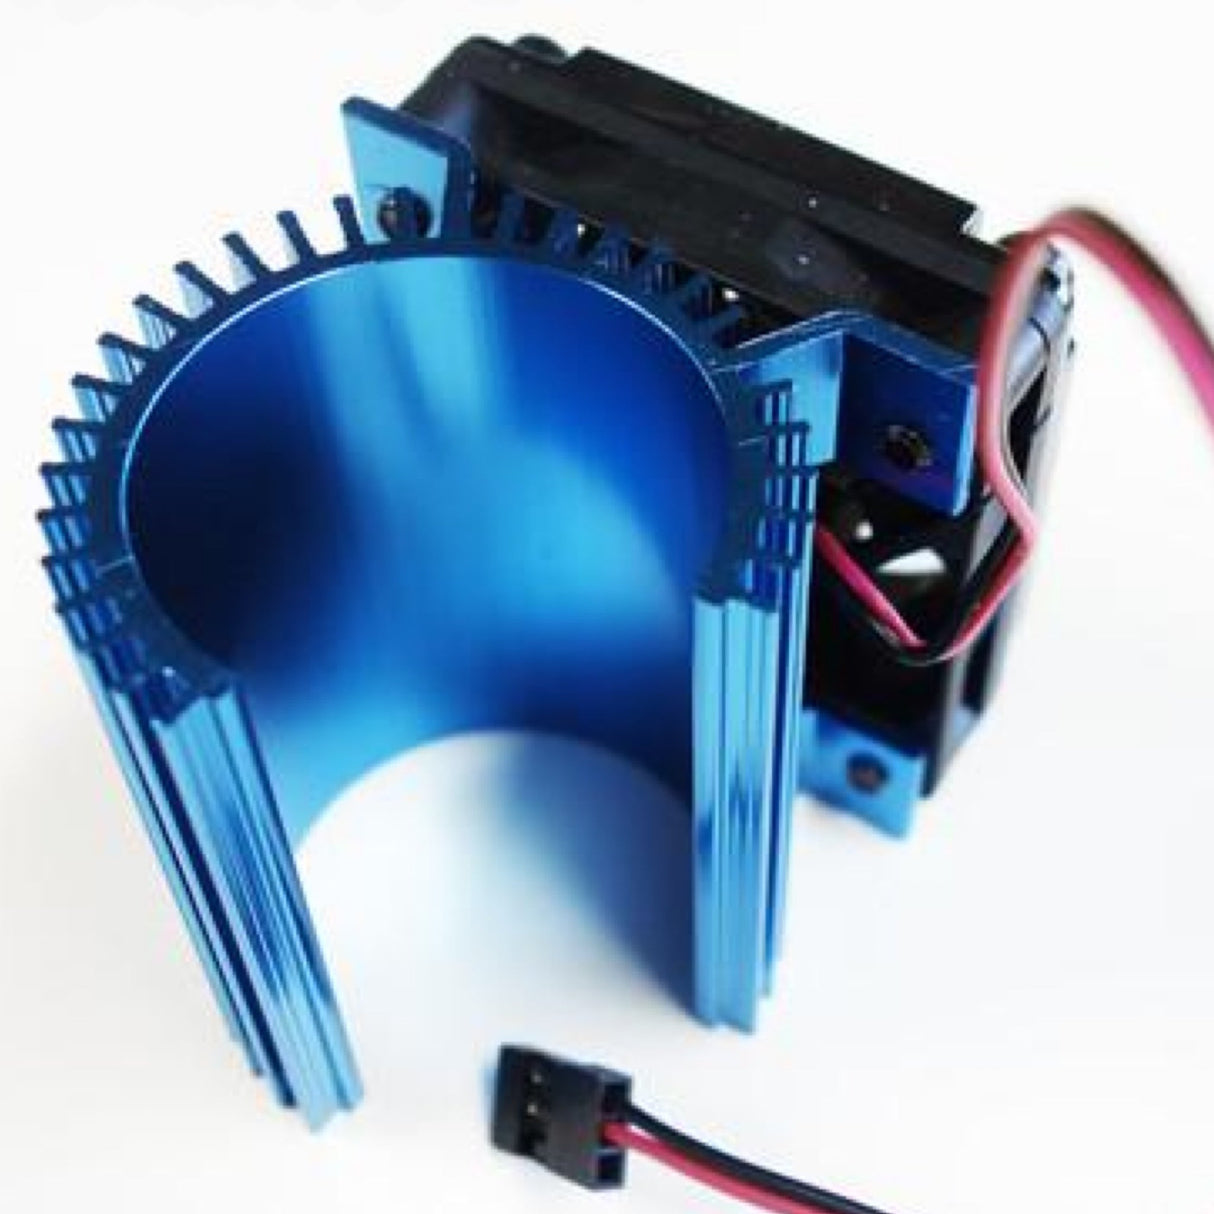 HobbyWing Heat Sink & Cooling Fan C1 Combo for 36mm Motors